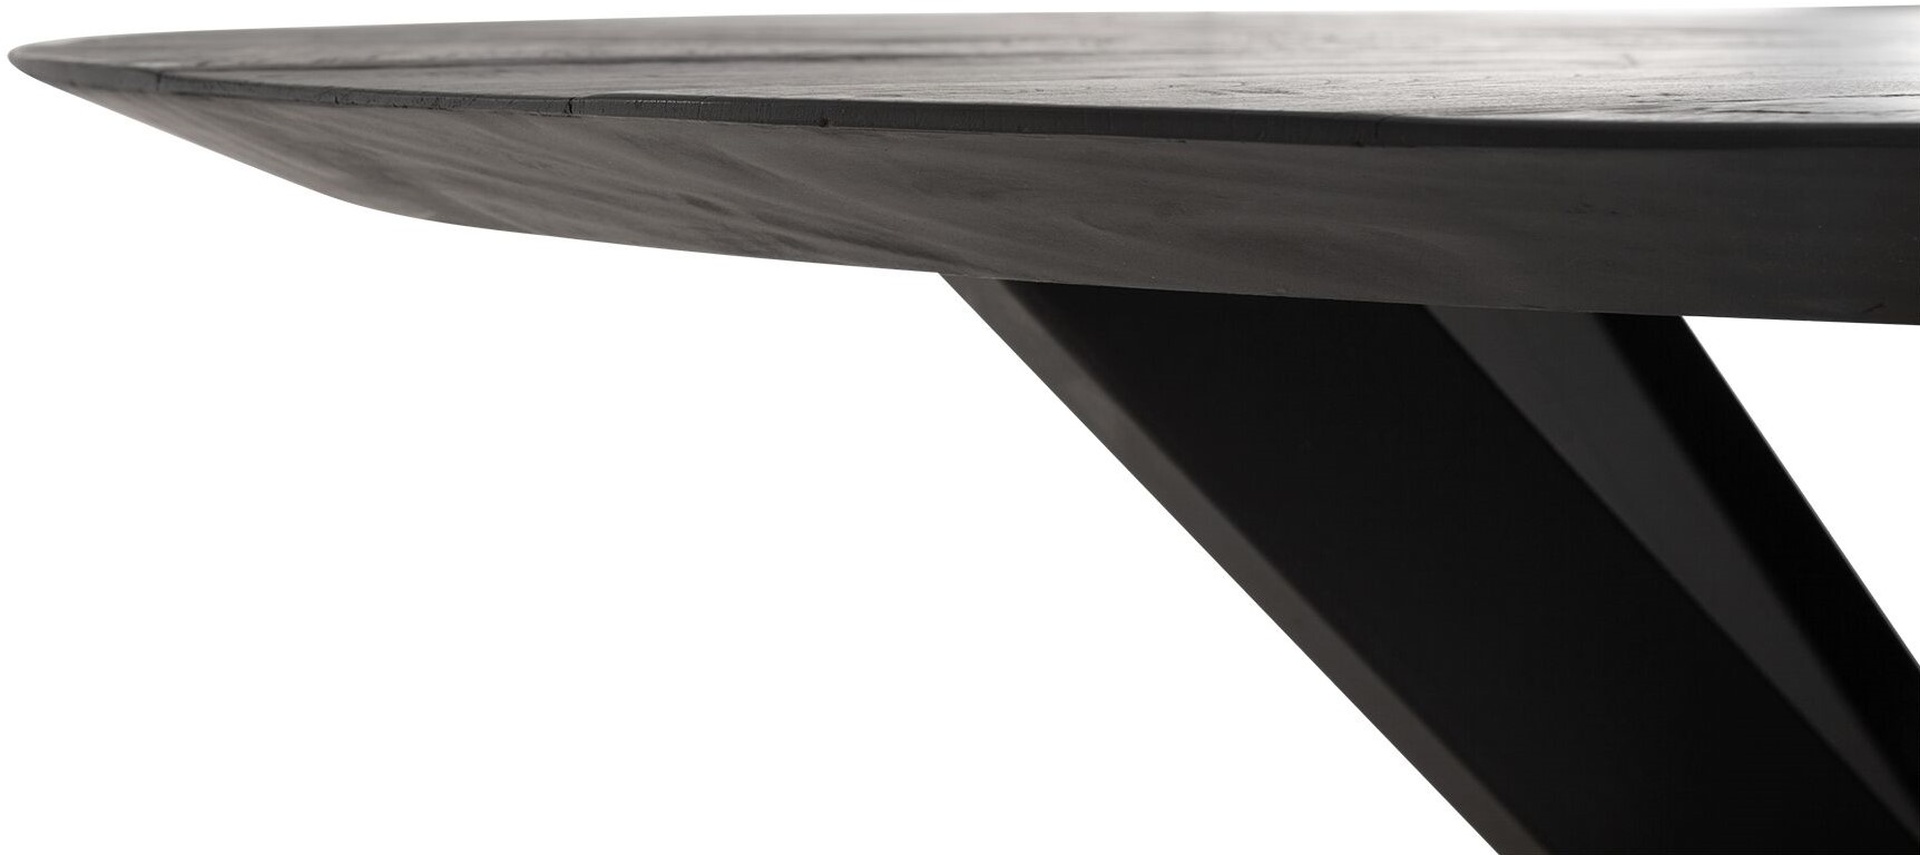 Der Esstisch Shape überzeugt mit seinem modernem aber auch massivem Design. Gefertigt wurde der Tisch aus recyceltem Teakholz, welches einen schwarzen Farbton besitzt. Das Gestell ist aus Metall und ist Schwarz. Der Tisch hat einen Durchmesser von 130 cm.